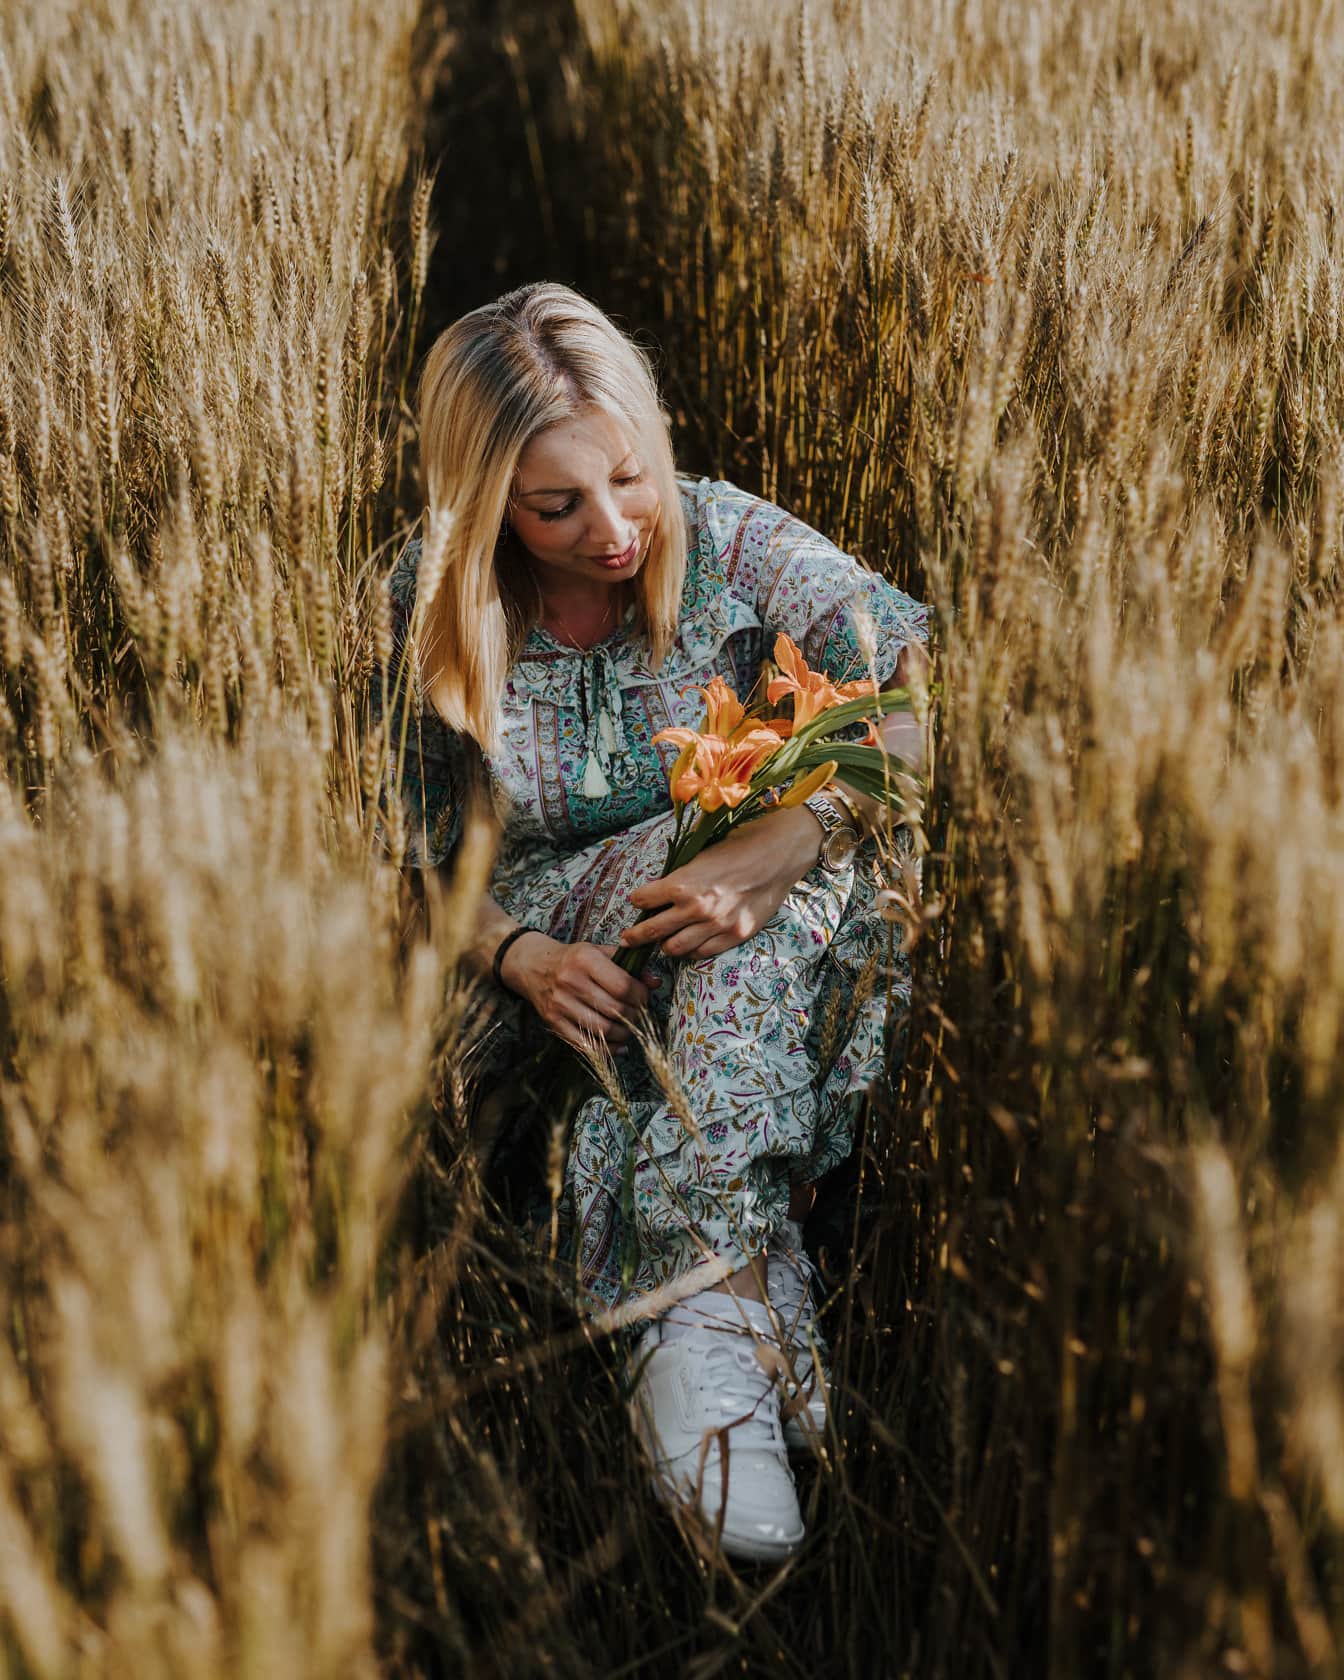 Zgodna plavuša s cvjetovima amaryllis u polju pšenice